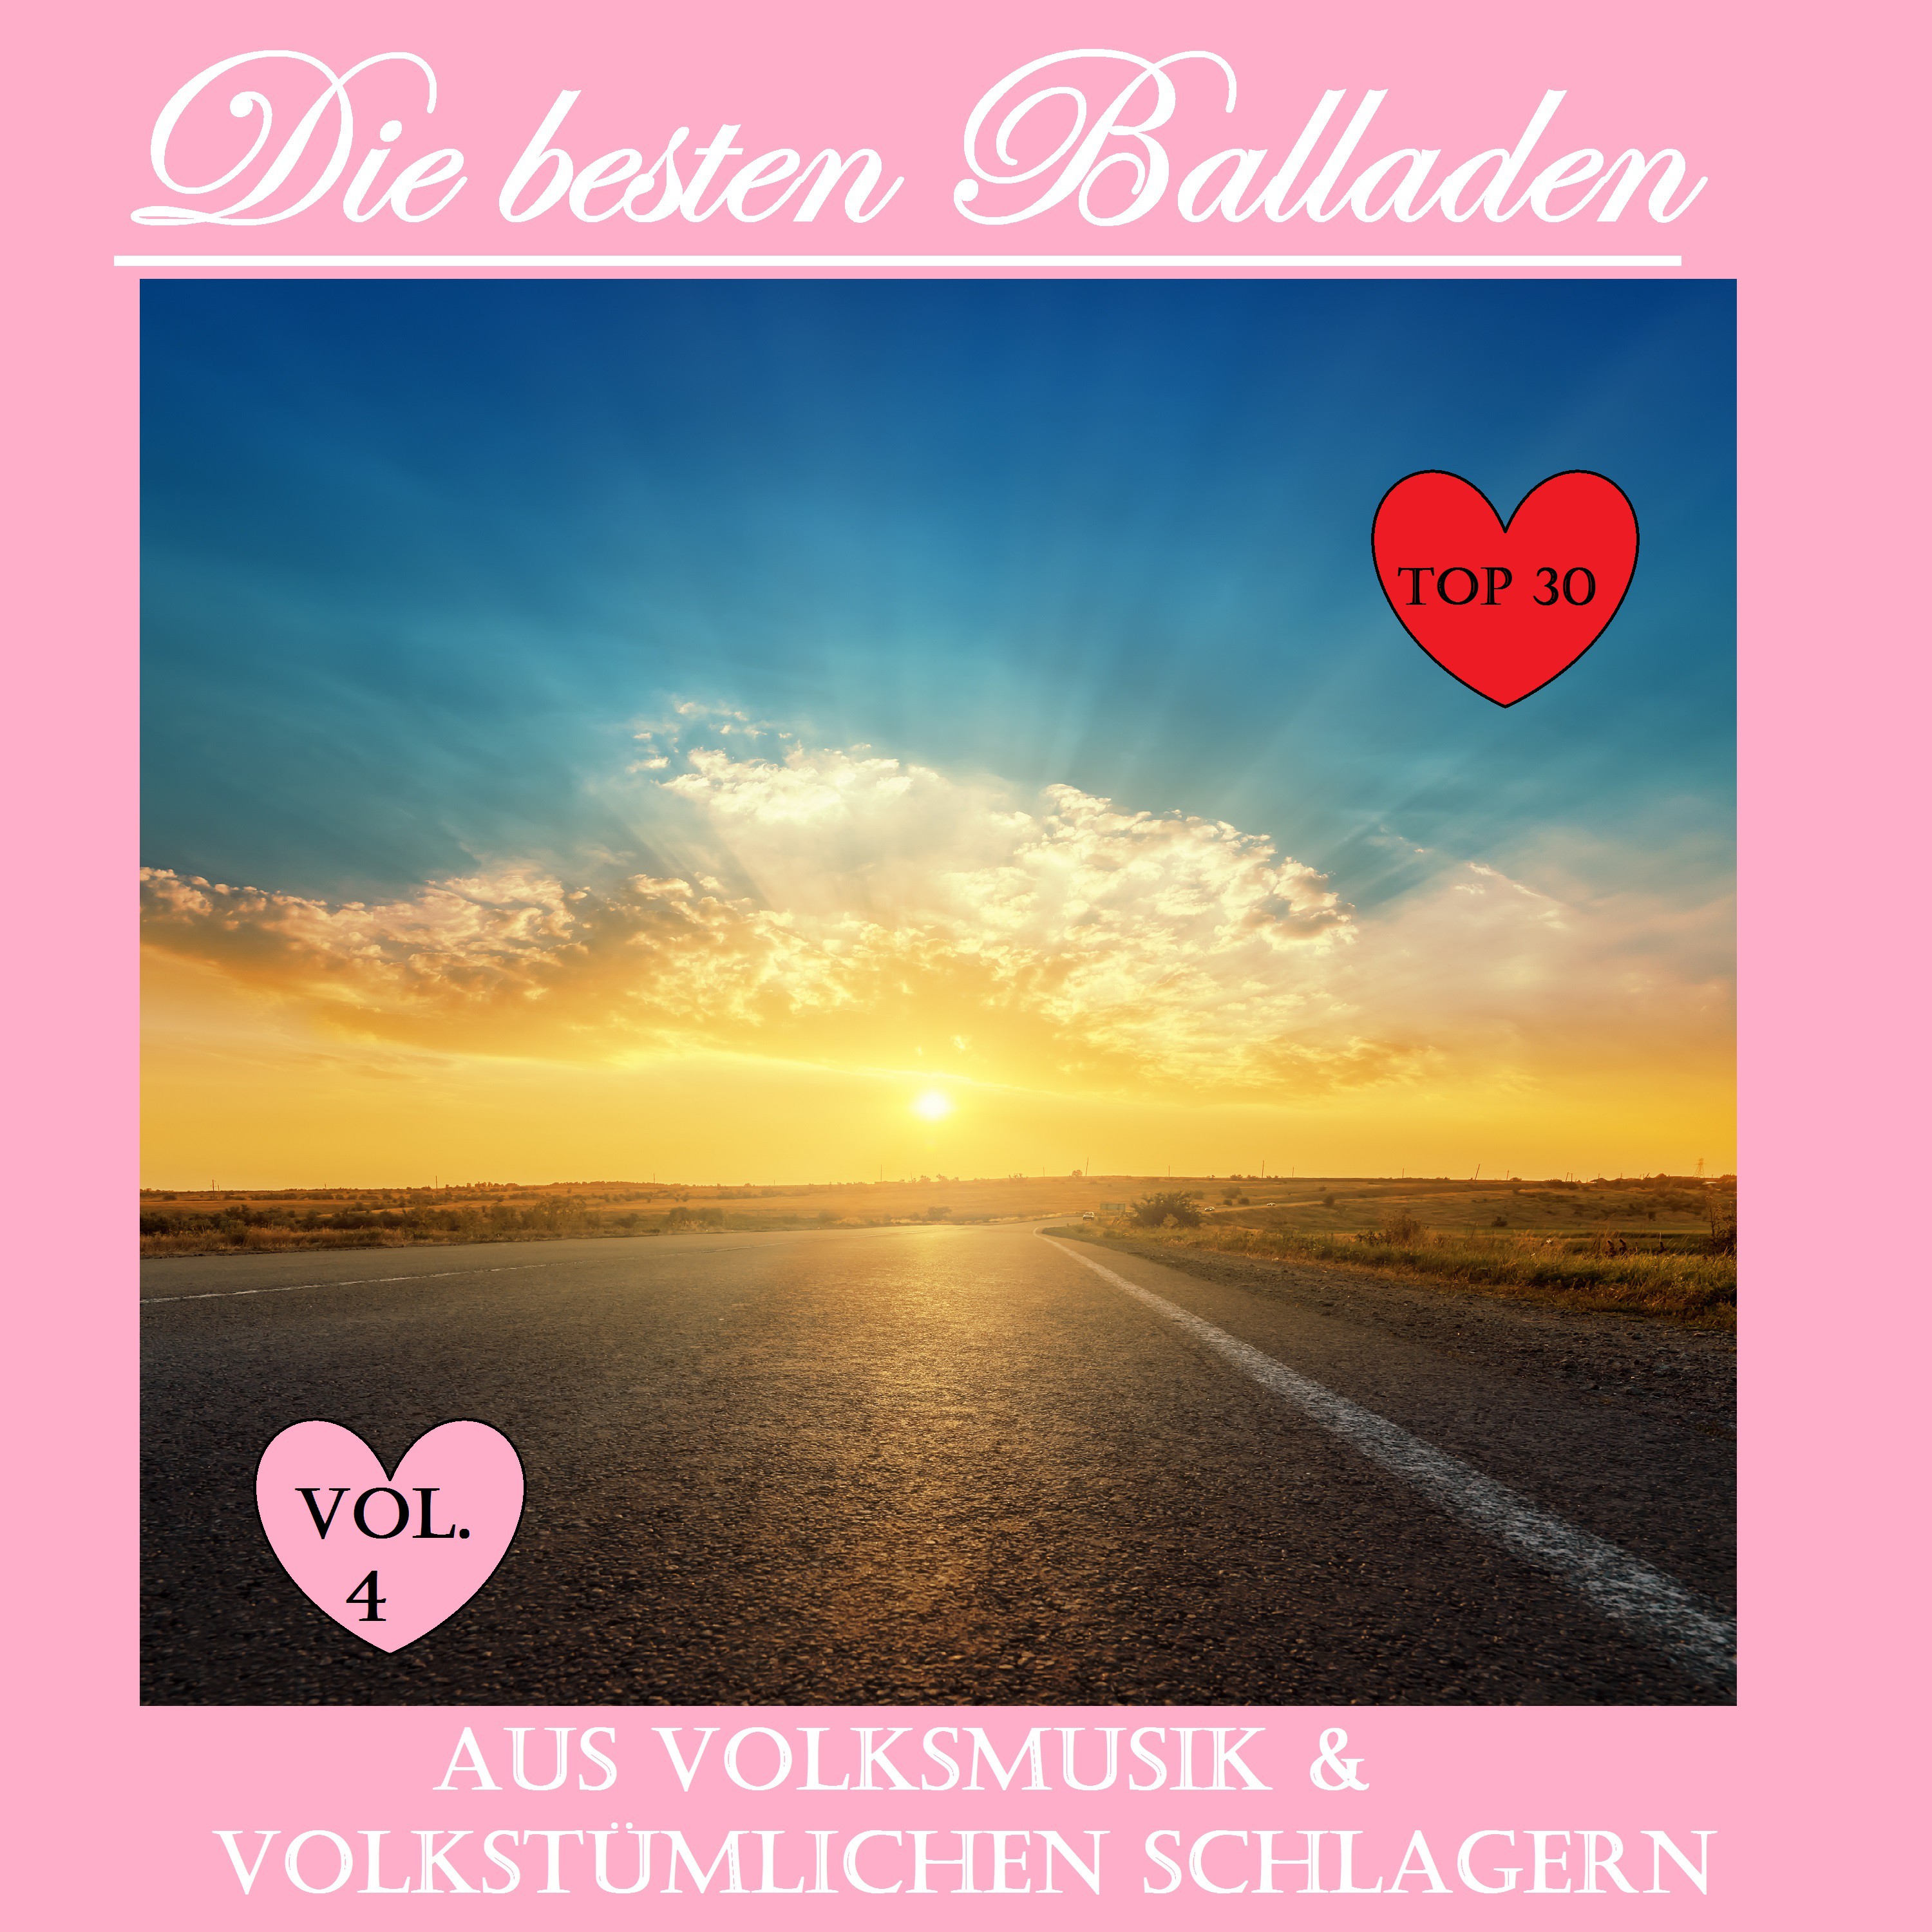 Top 30: Die besten Balladen aus Volksmusik  volkstü mlichen Schlager, Vol. 4